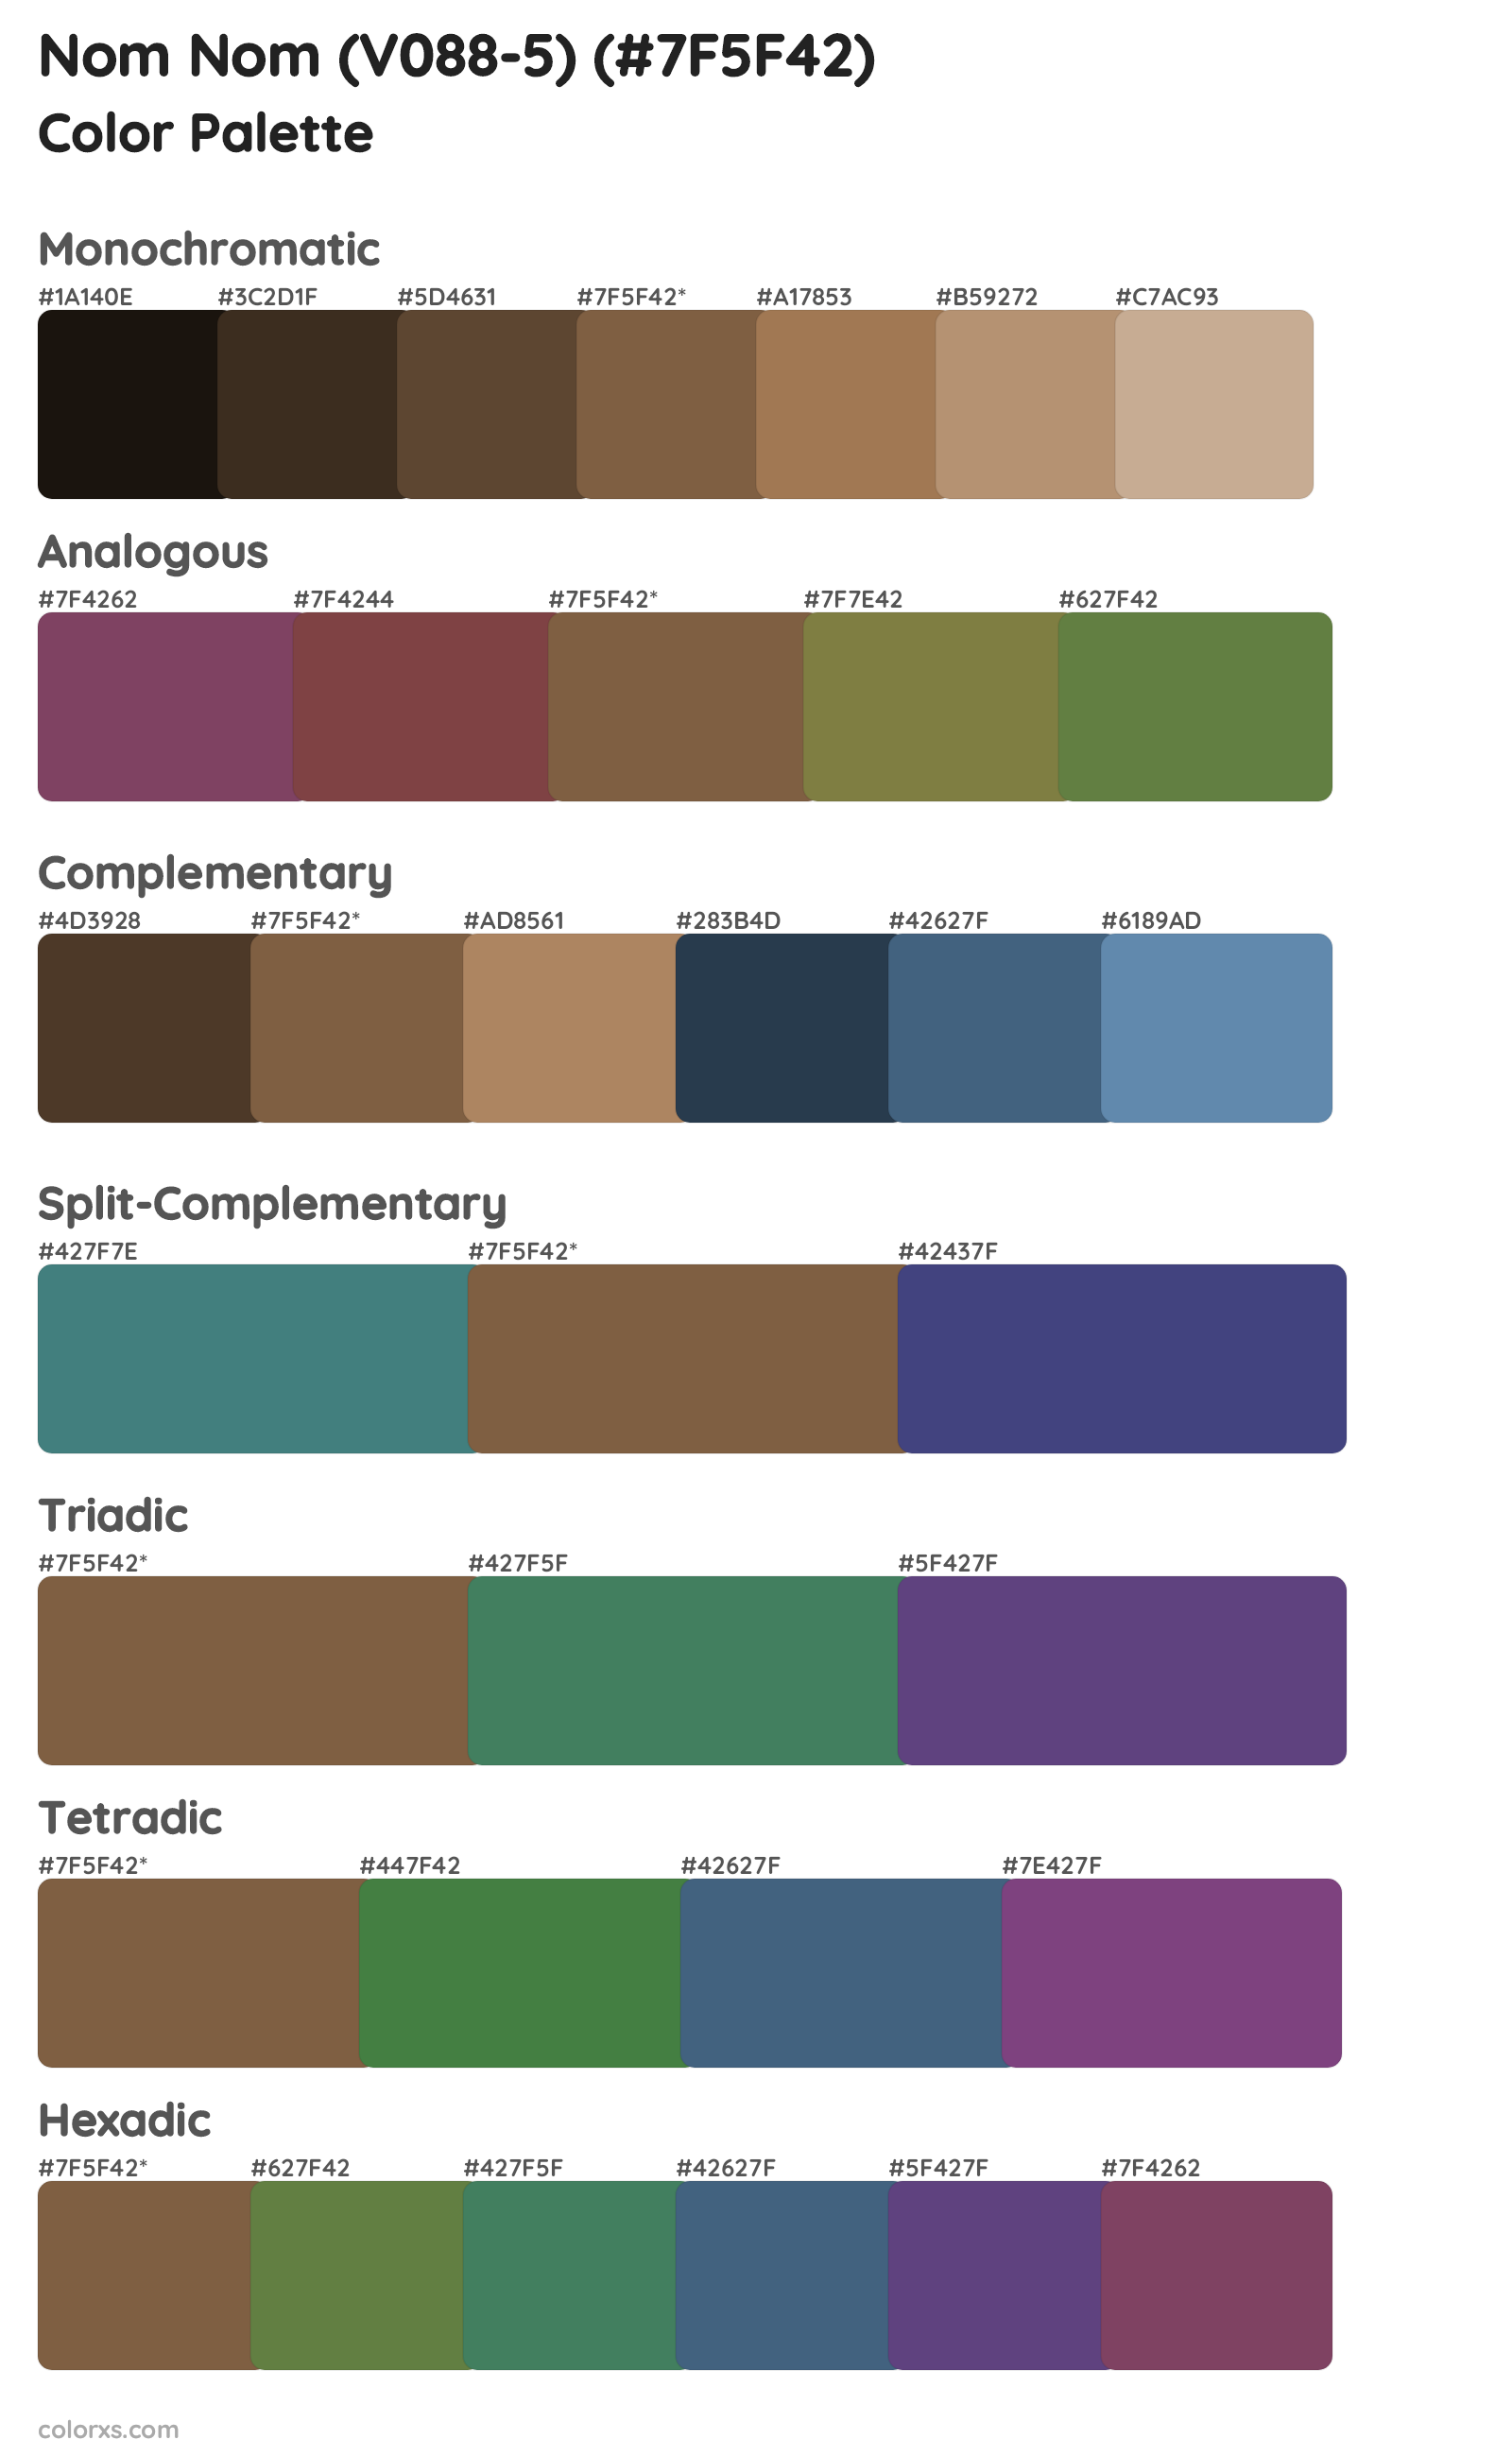 Nom Nom (V088-5) Color Scheme Palettes